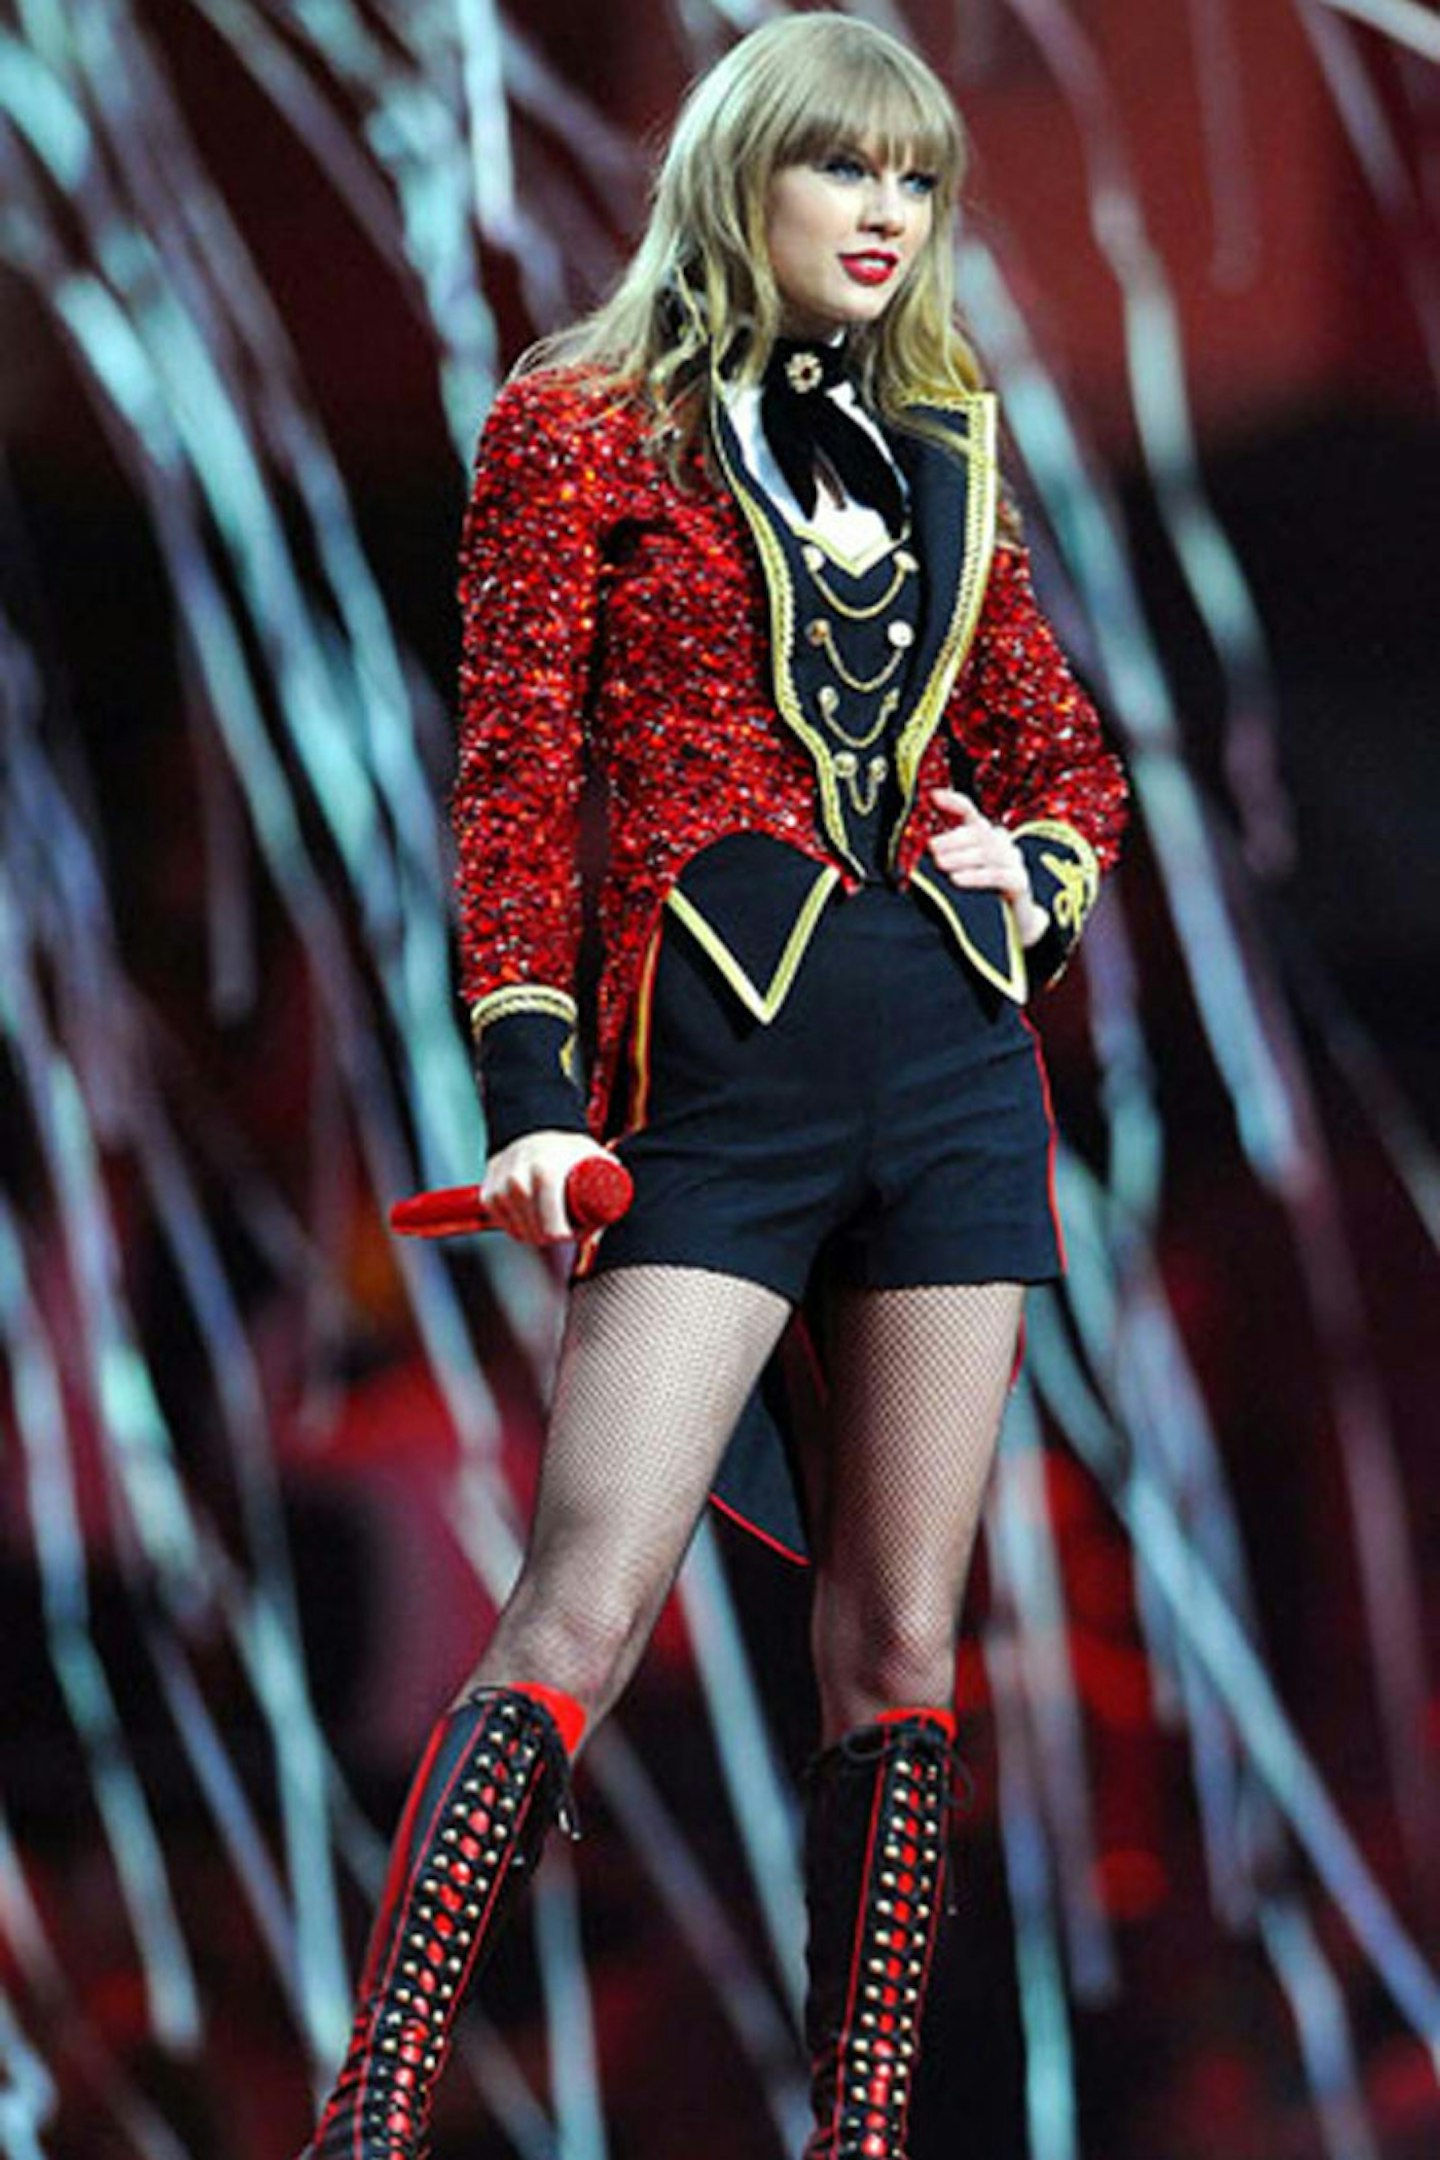 2 -Taylor Swift performing at the MTV EMAs - November 2012